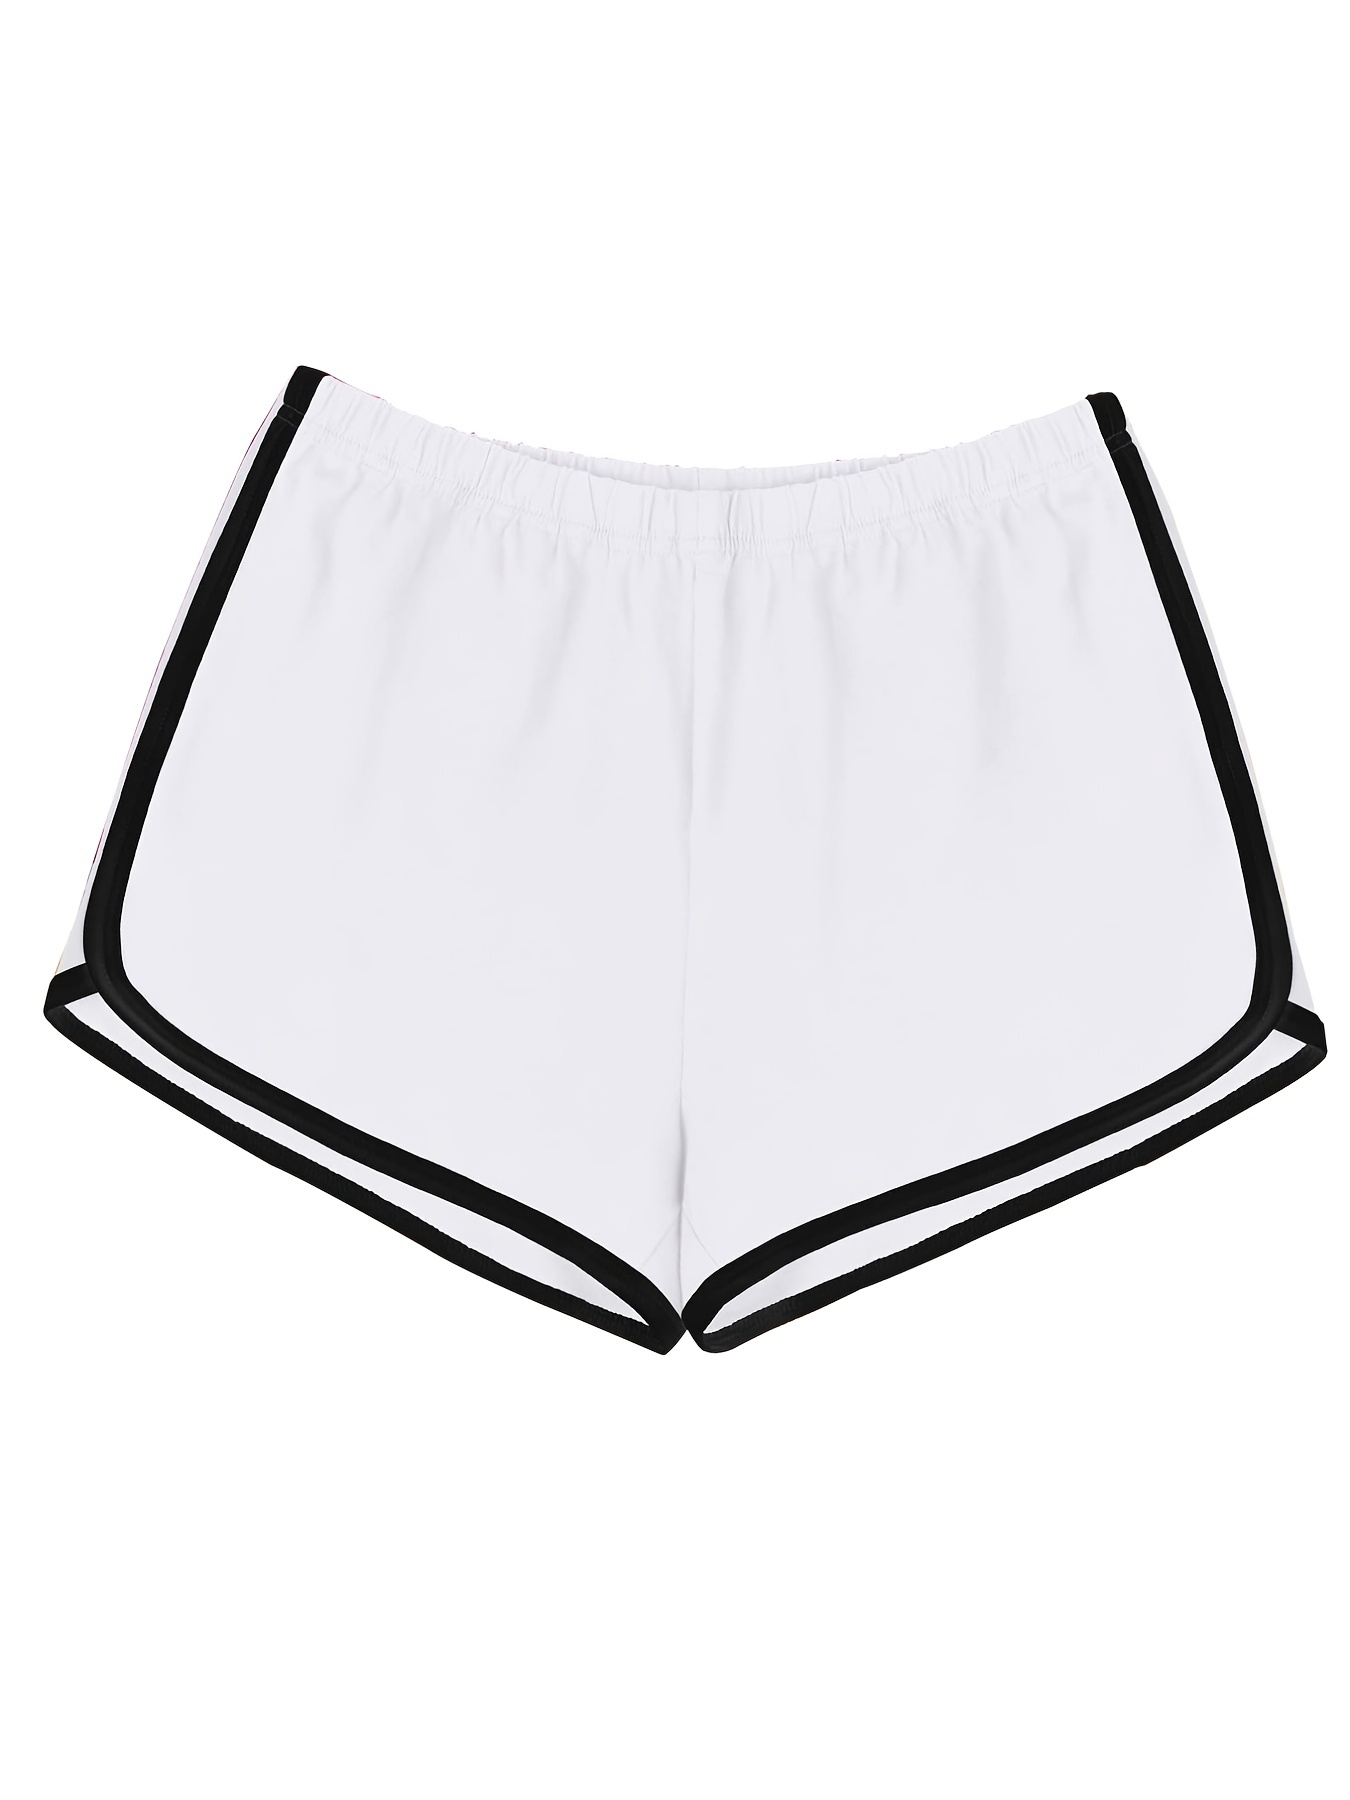 White Shorts for Women Table Tennis Bat Black Leggings Kids 11 12